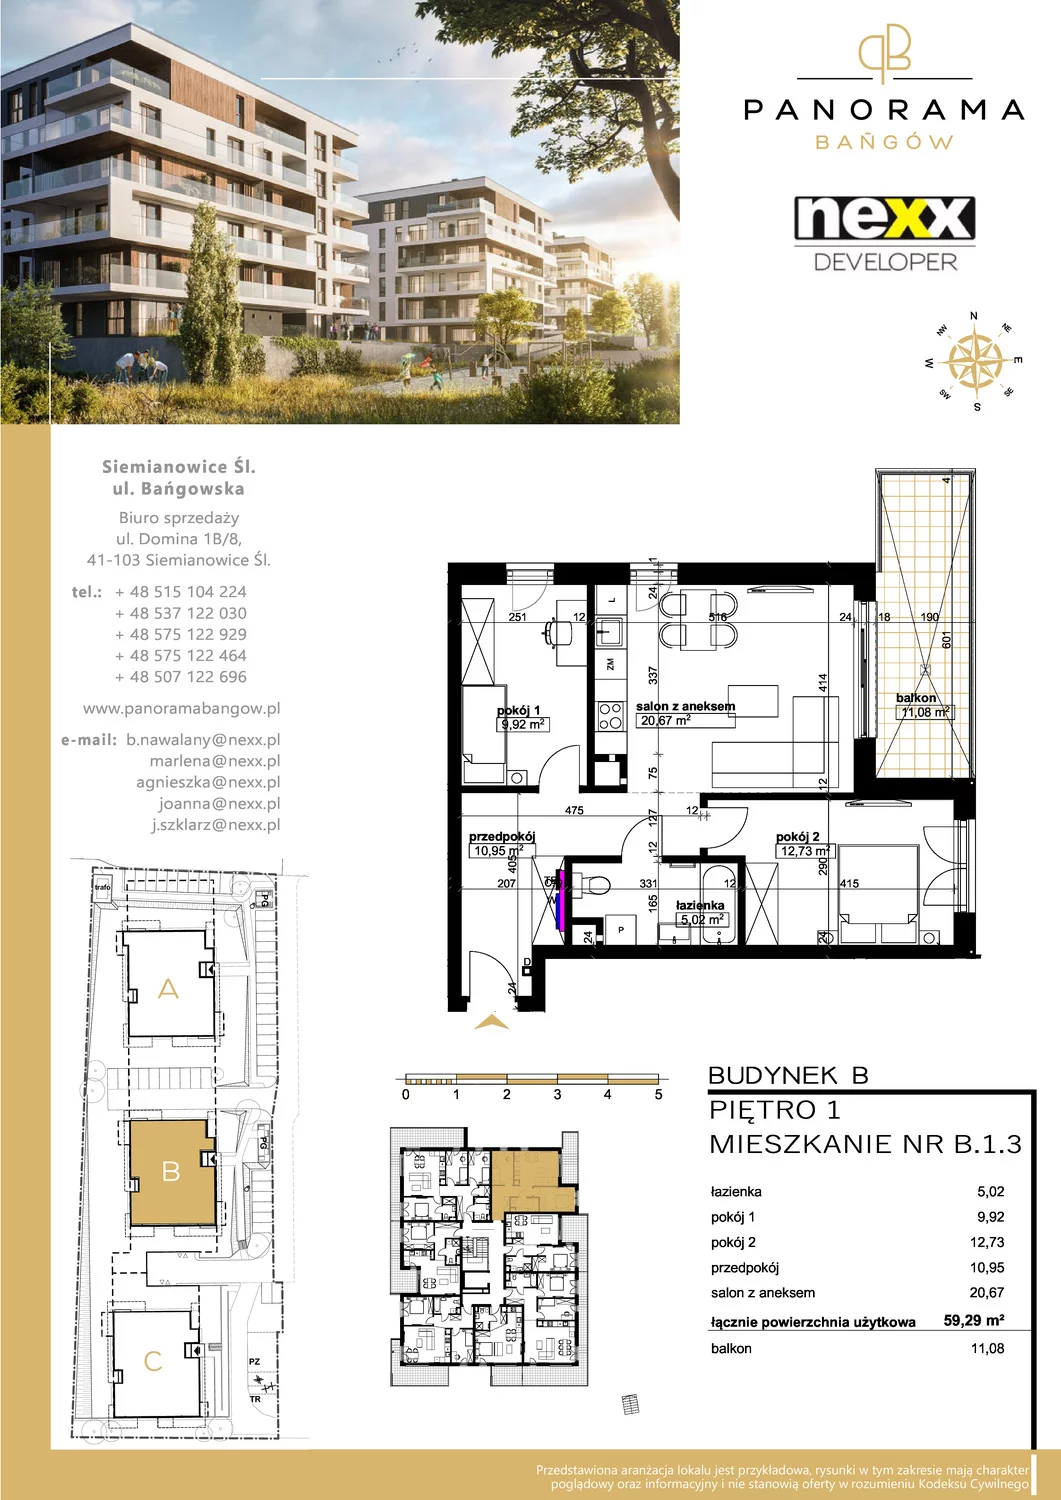 Mieszkanie 59,29 m², piętro 1, oferta nr B 1.3, Panorama Bańgów, Siemianowice Śląskie, Bańgów, ul. Bańgowska